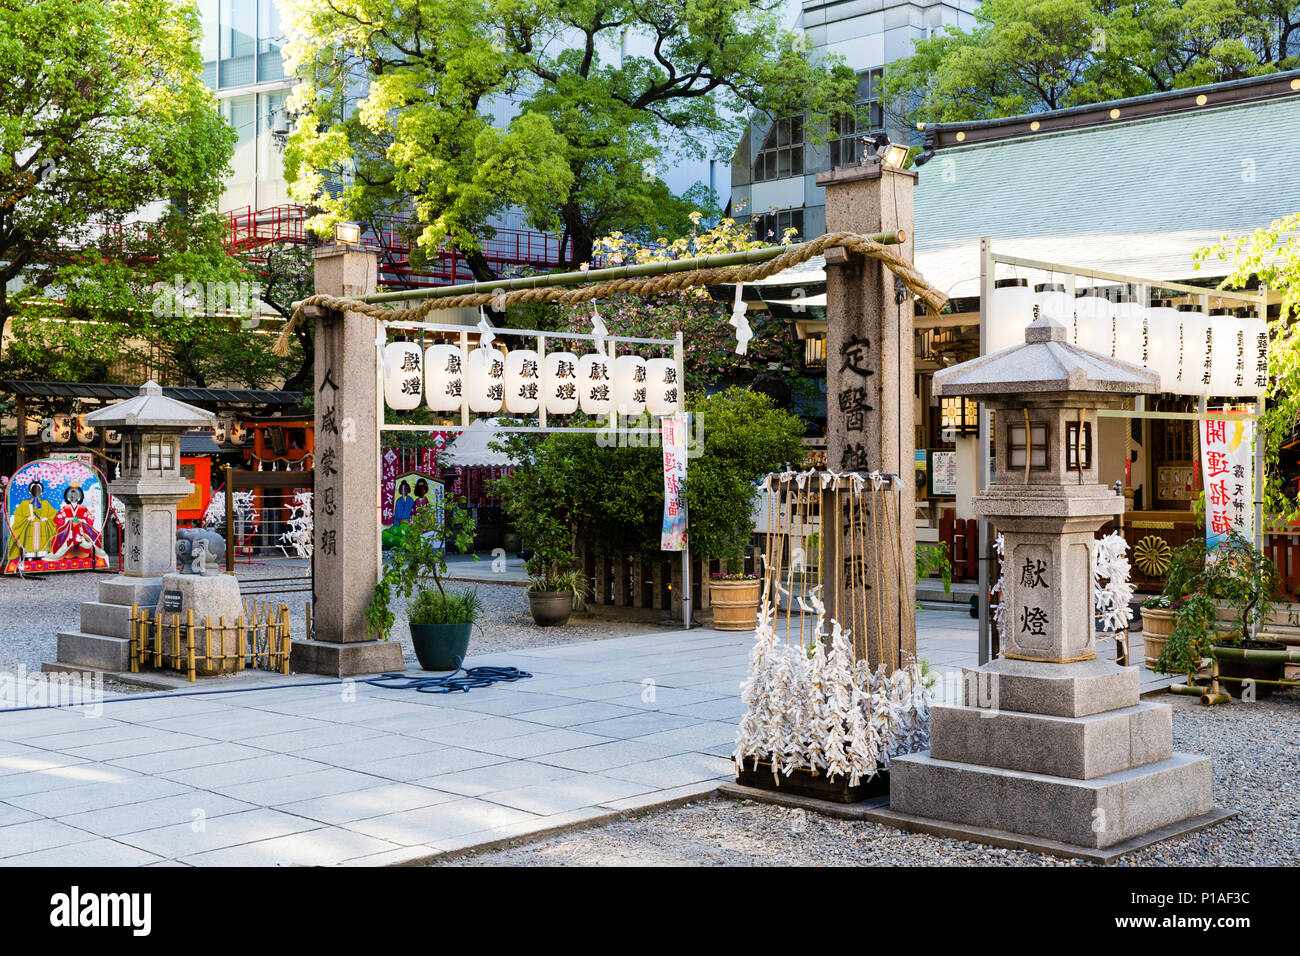 Cour principale zone de l'Ohatsu Tenjin de culte, les amateurs de 'culte', Osaka, Japon. Banque D'Images